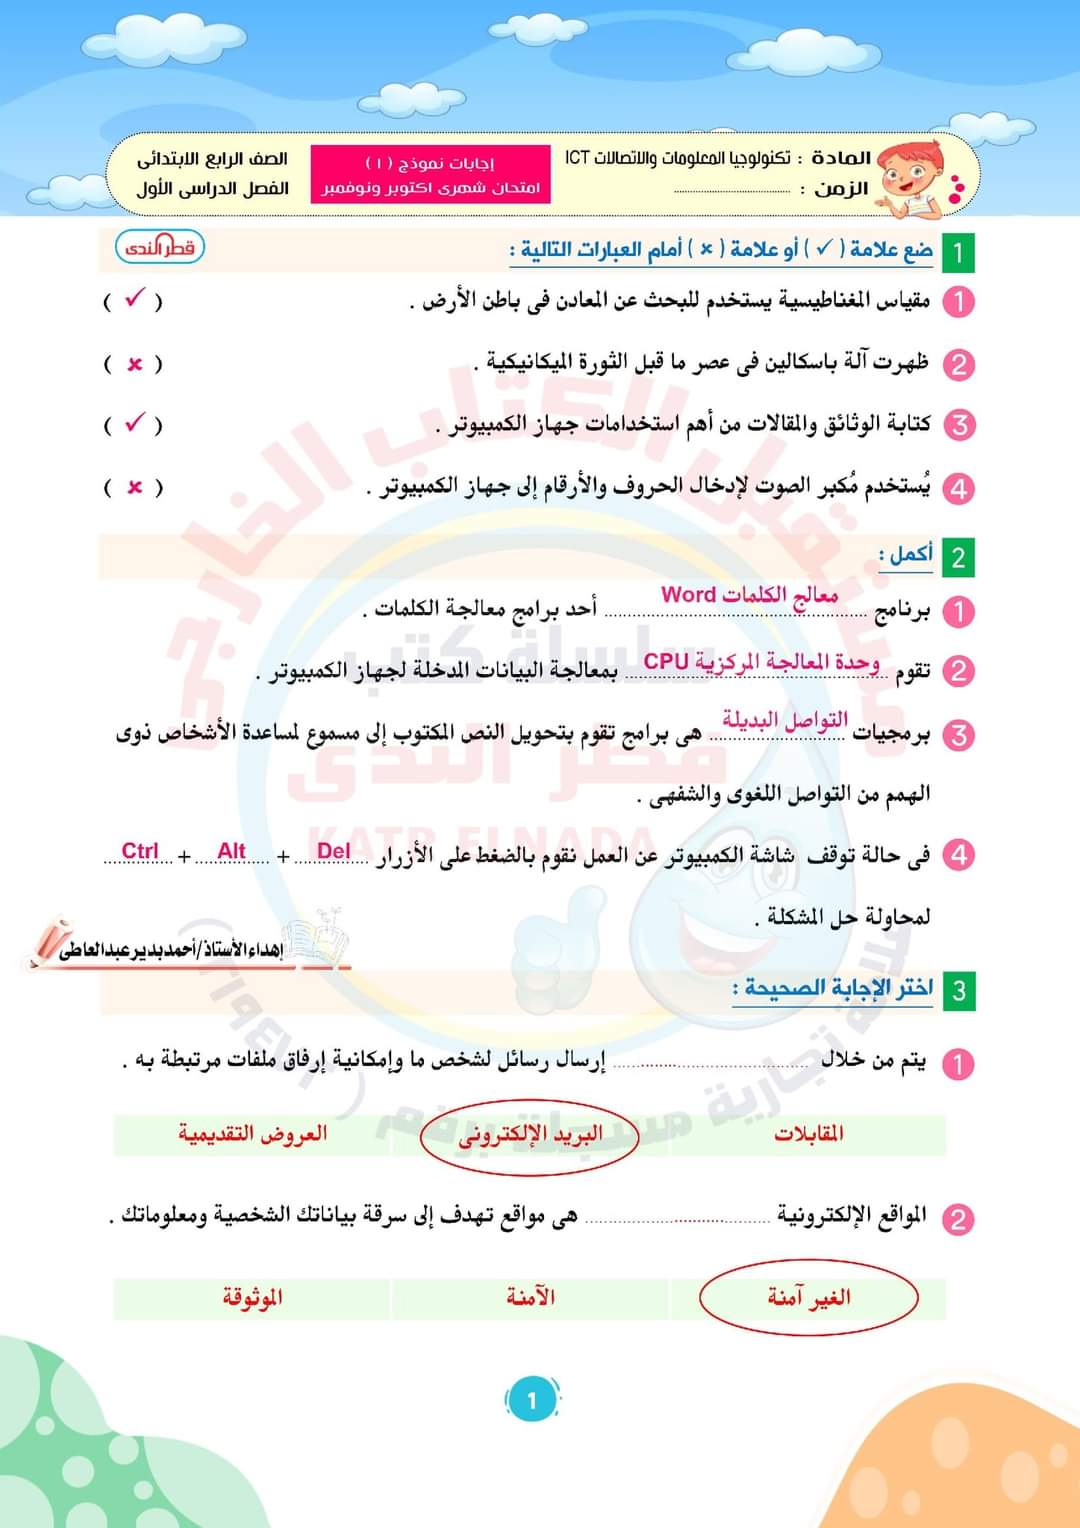 نماذج امتحانات رابعة ابتدائي كل المواد - احمد بدير عبد العاطي